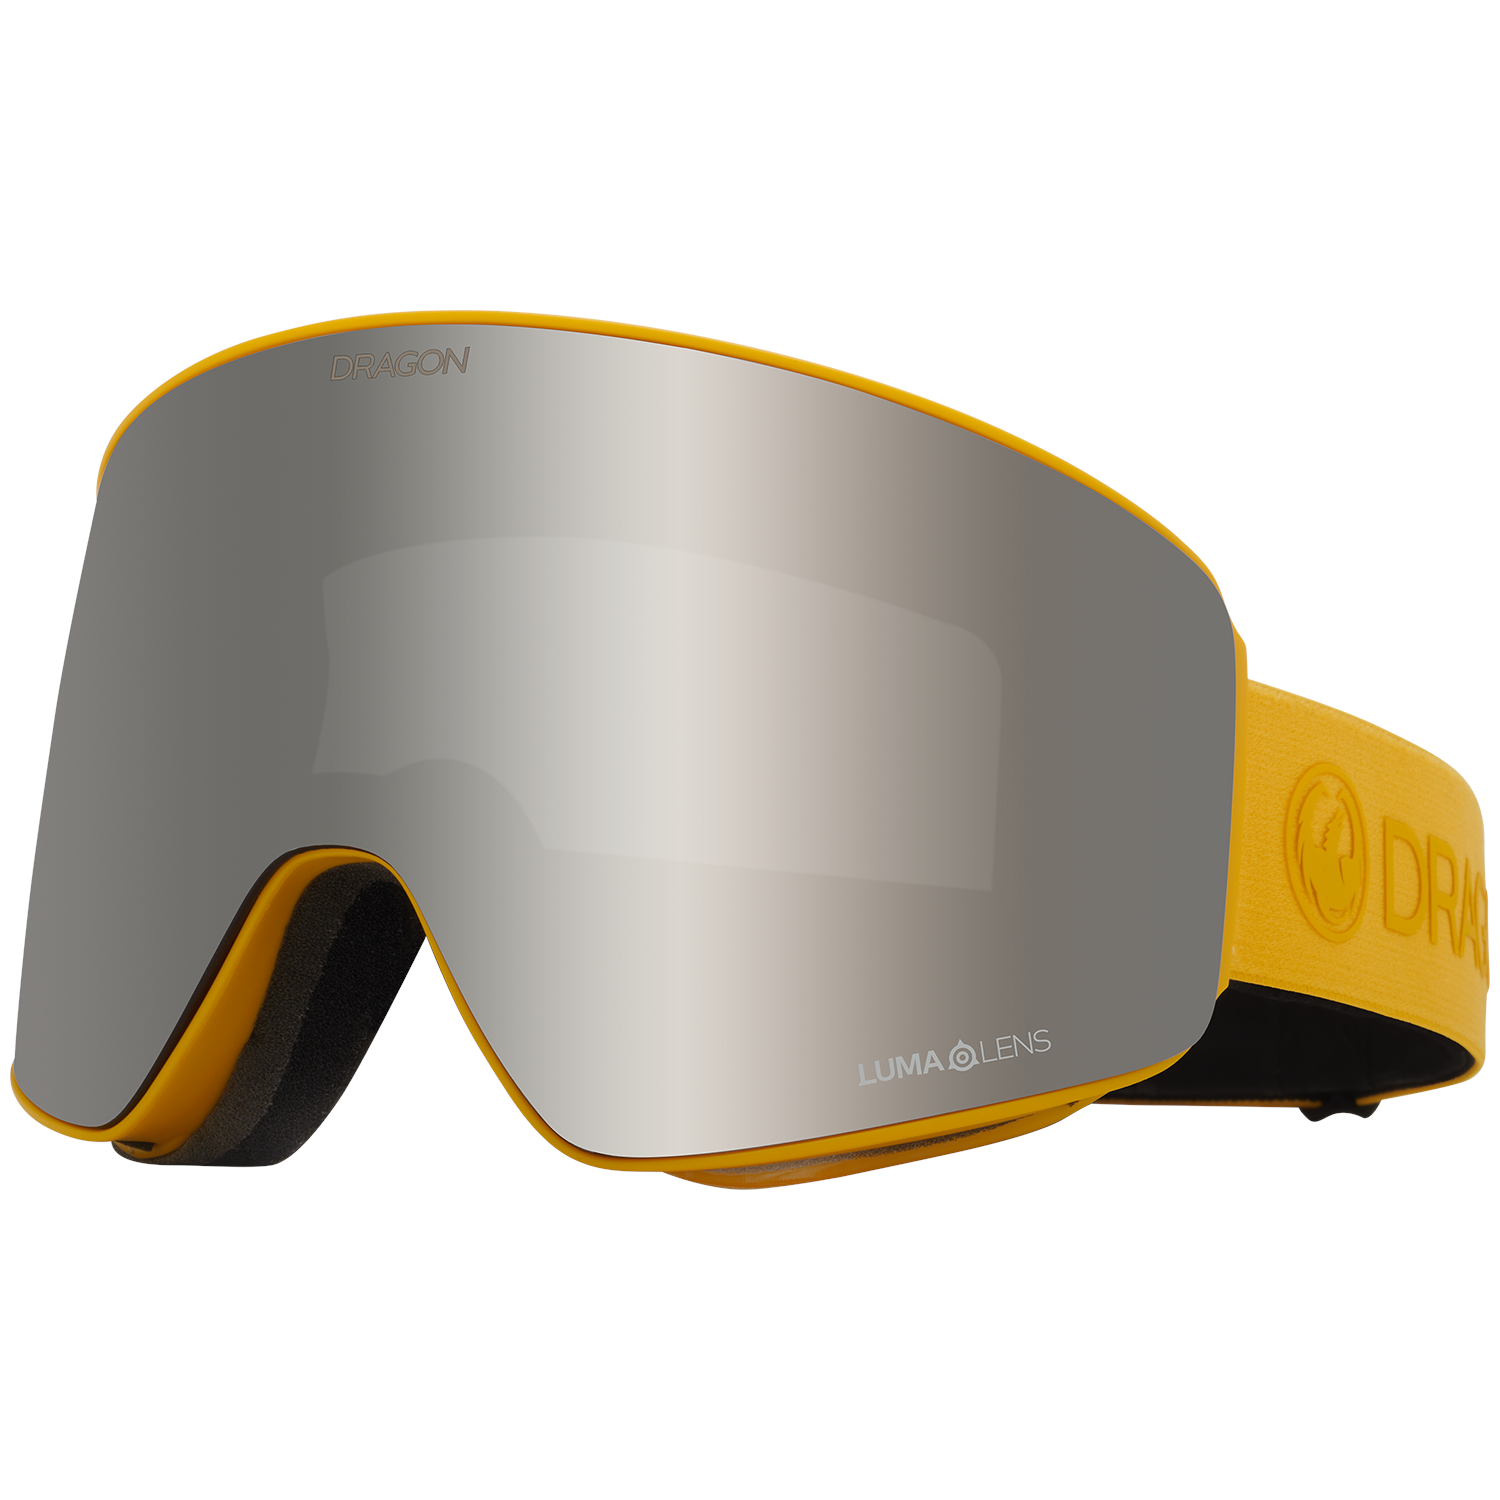 Лыжные очки Dragon PXV